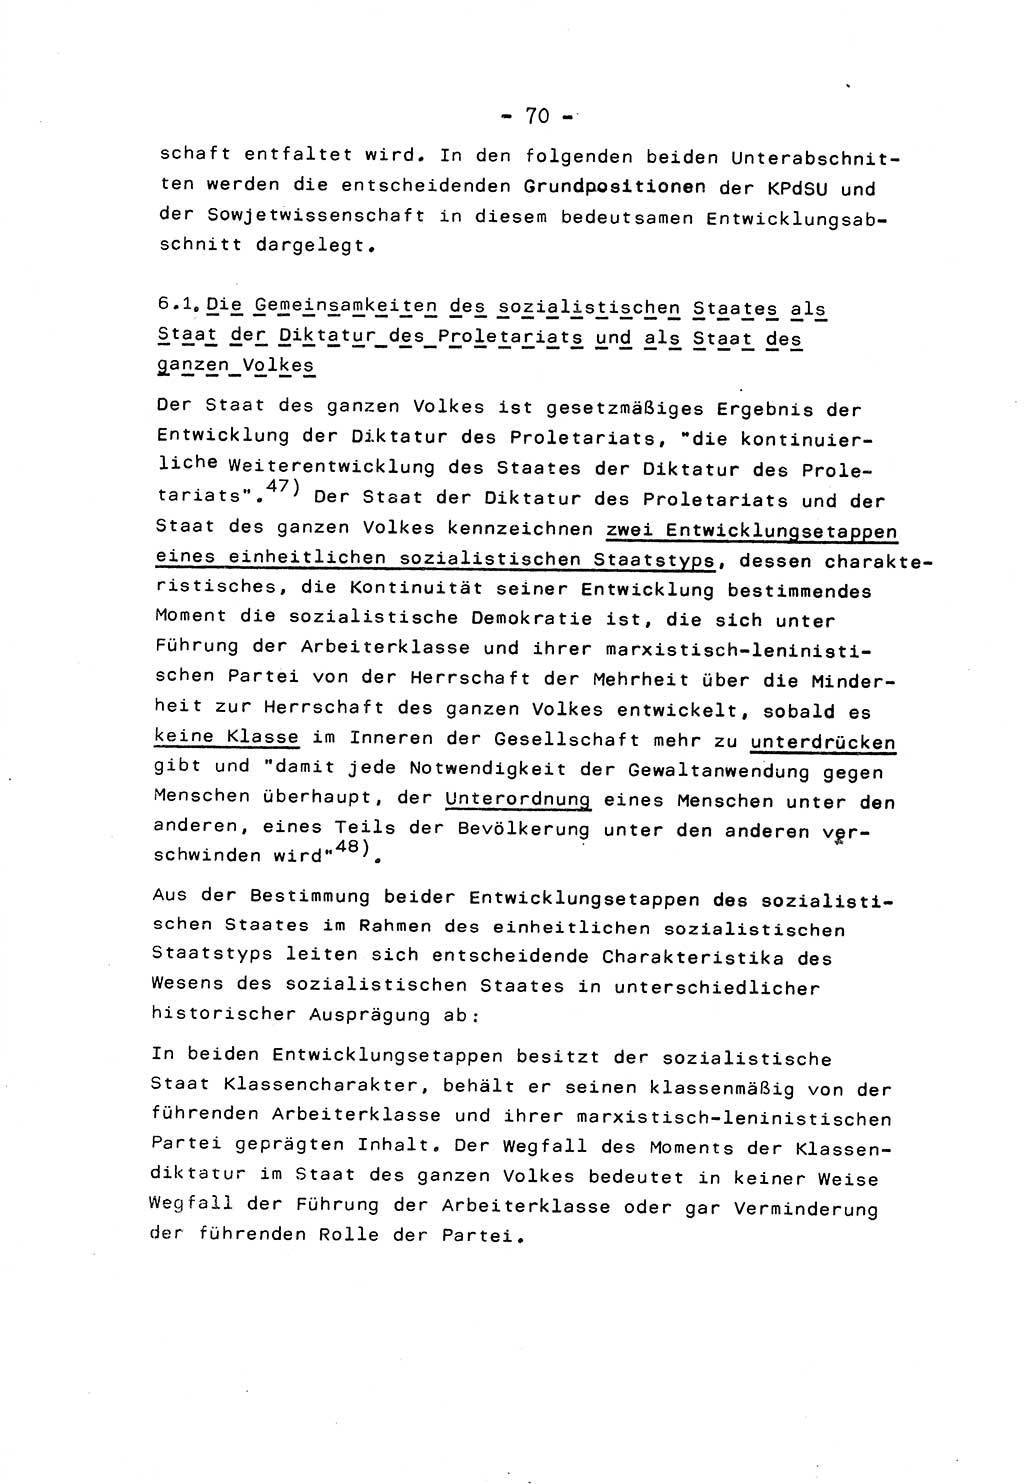 Marxistisch-leninistische Staats- und Rechtstheorie [Deutsche Demokratische Republik (DDR)] 1975, Seite 70 (ML St.-R.-Th. DDR 1975, S. 70)